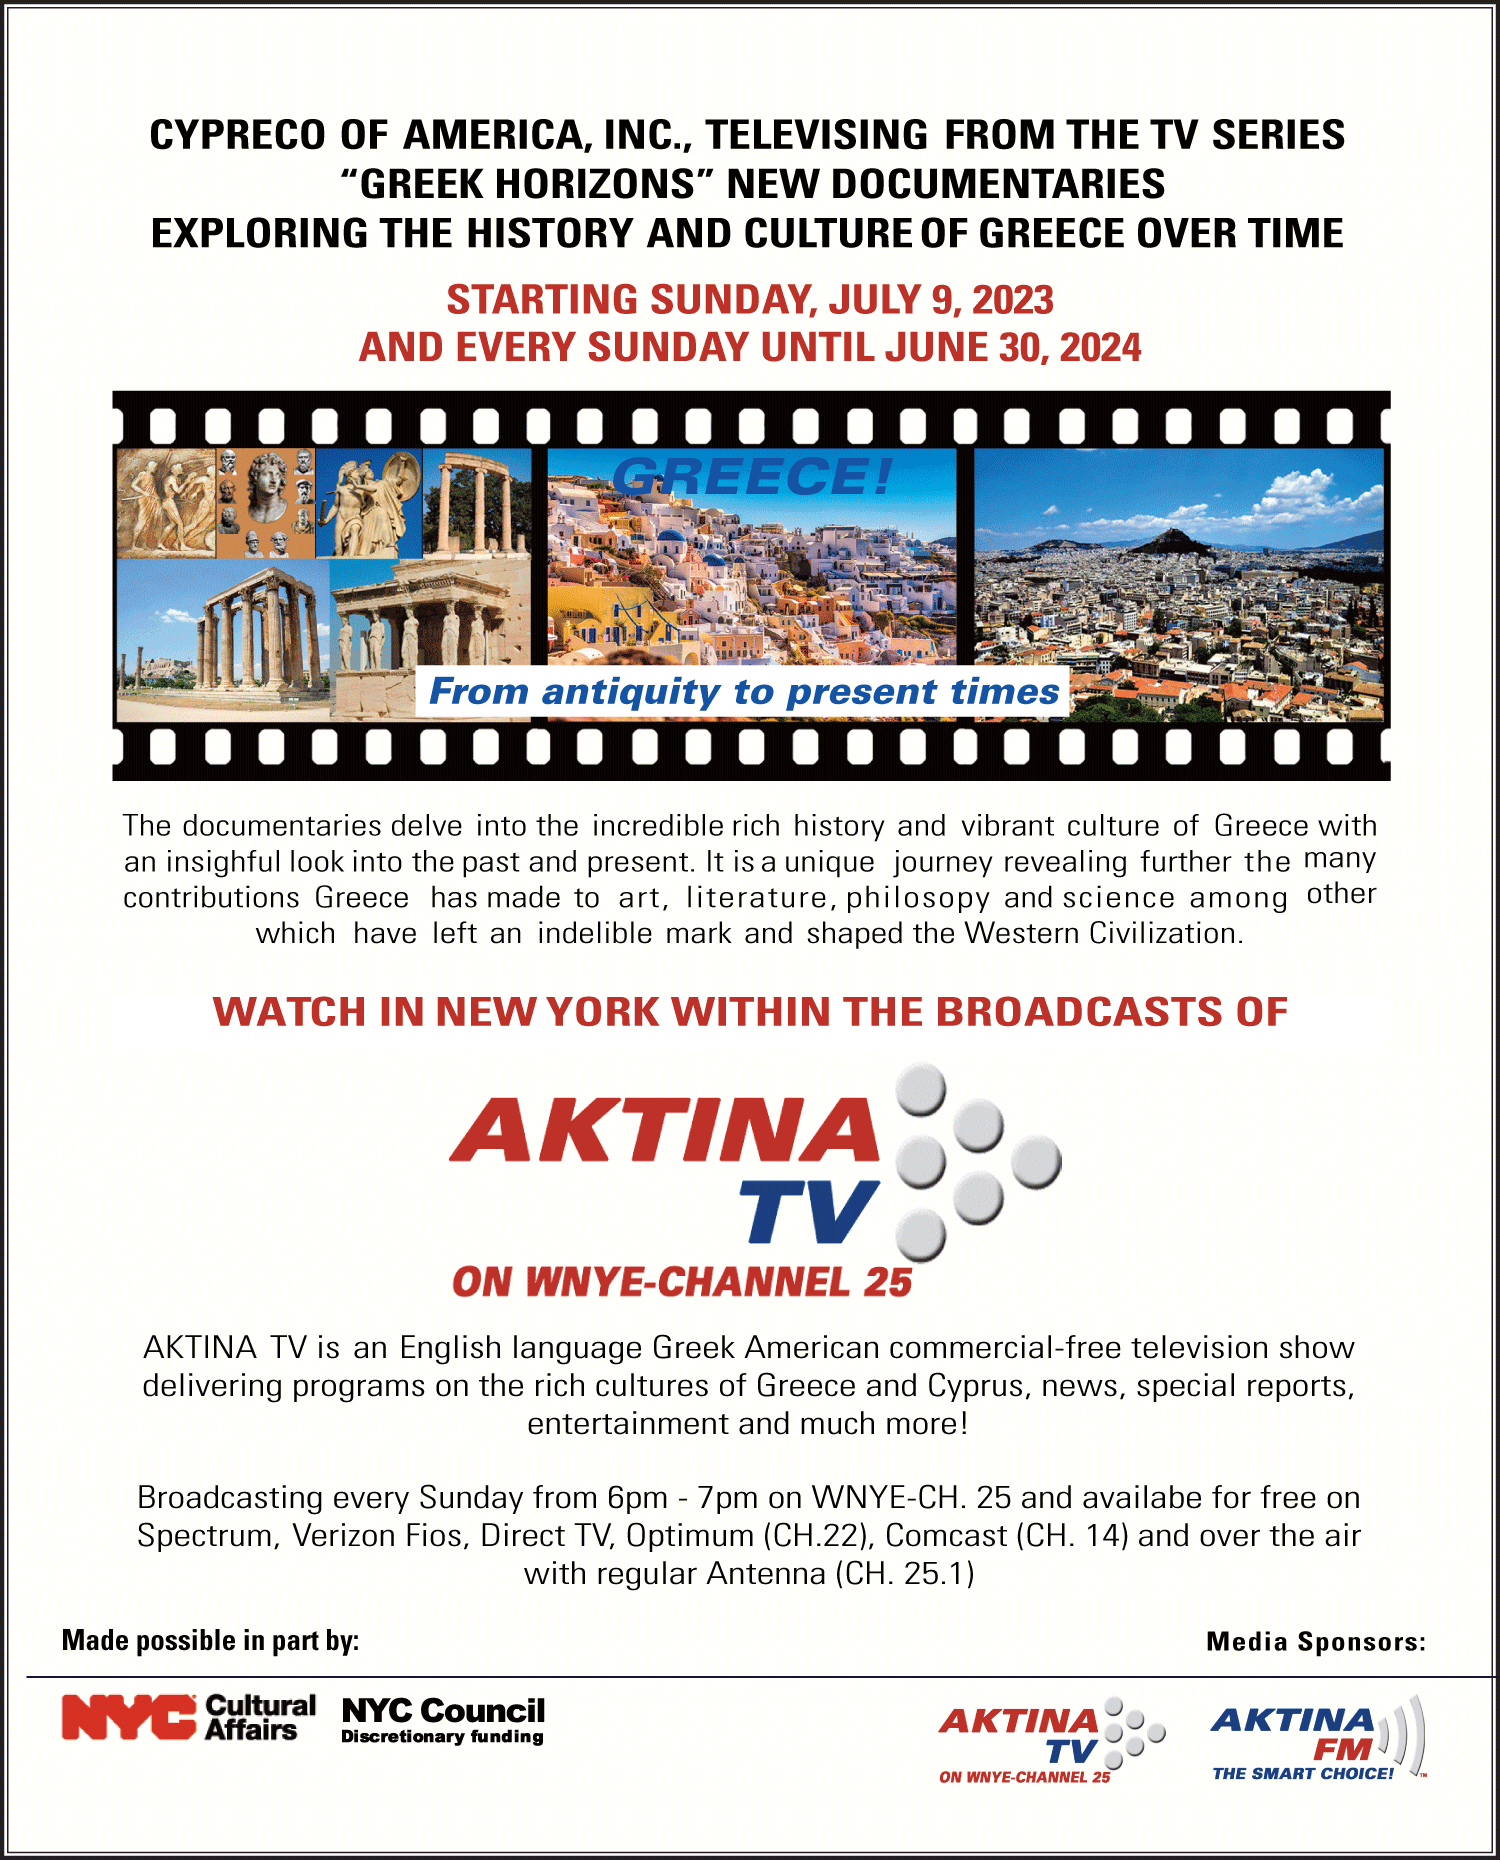 FY24 Cypreco Greek Documentaries